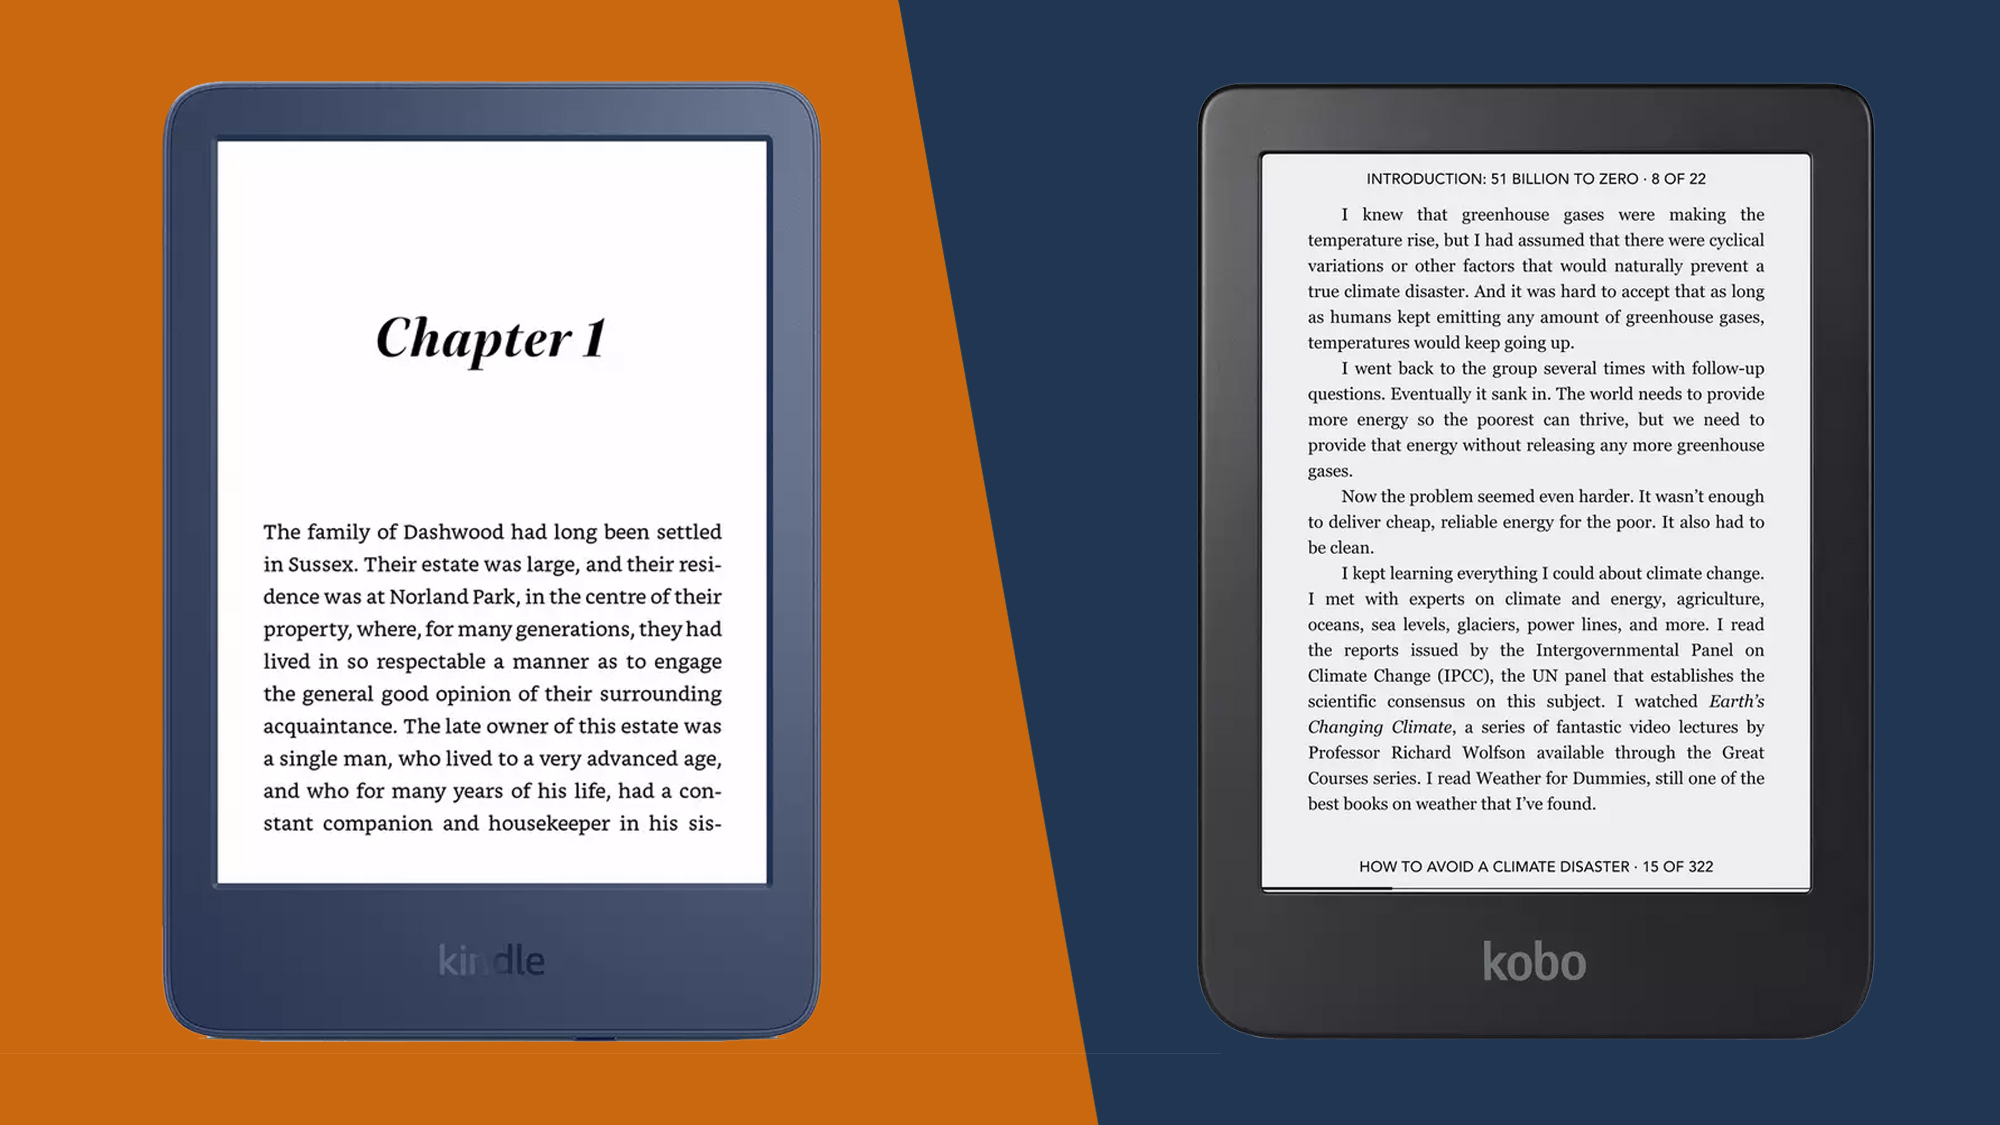 Libro electrónico E-Reader Kobo Clara HD 6 Negro - eBook